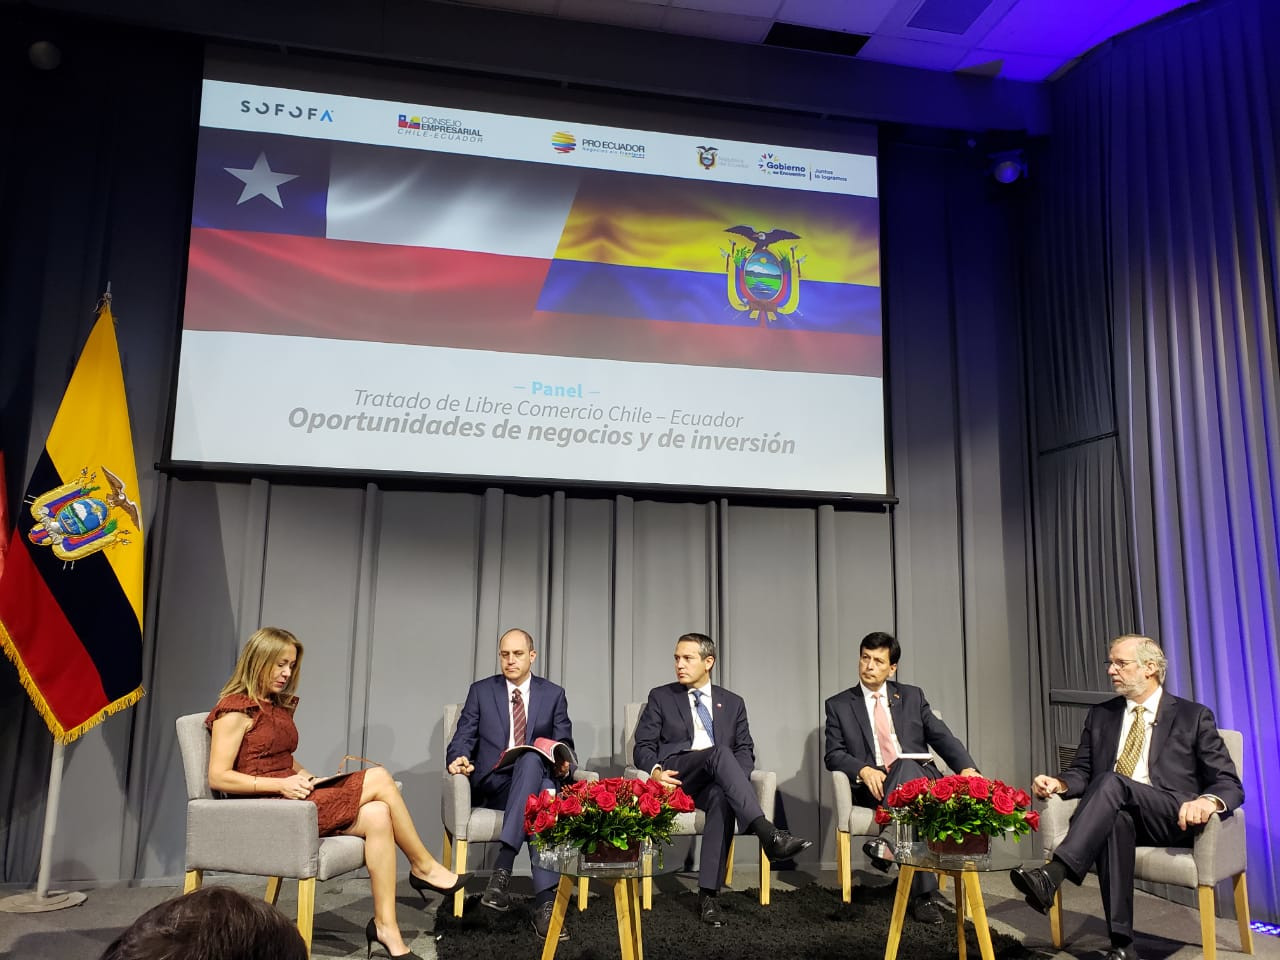 Panel Tratado de Libre Comercio Chile - Ecuador: Oportunidades de Negocios y de Inversión